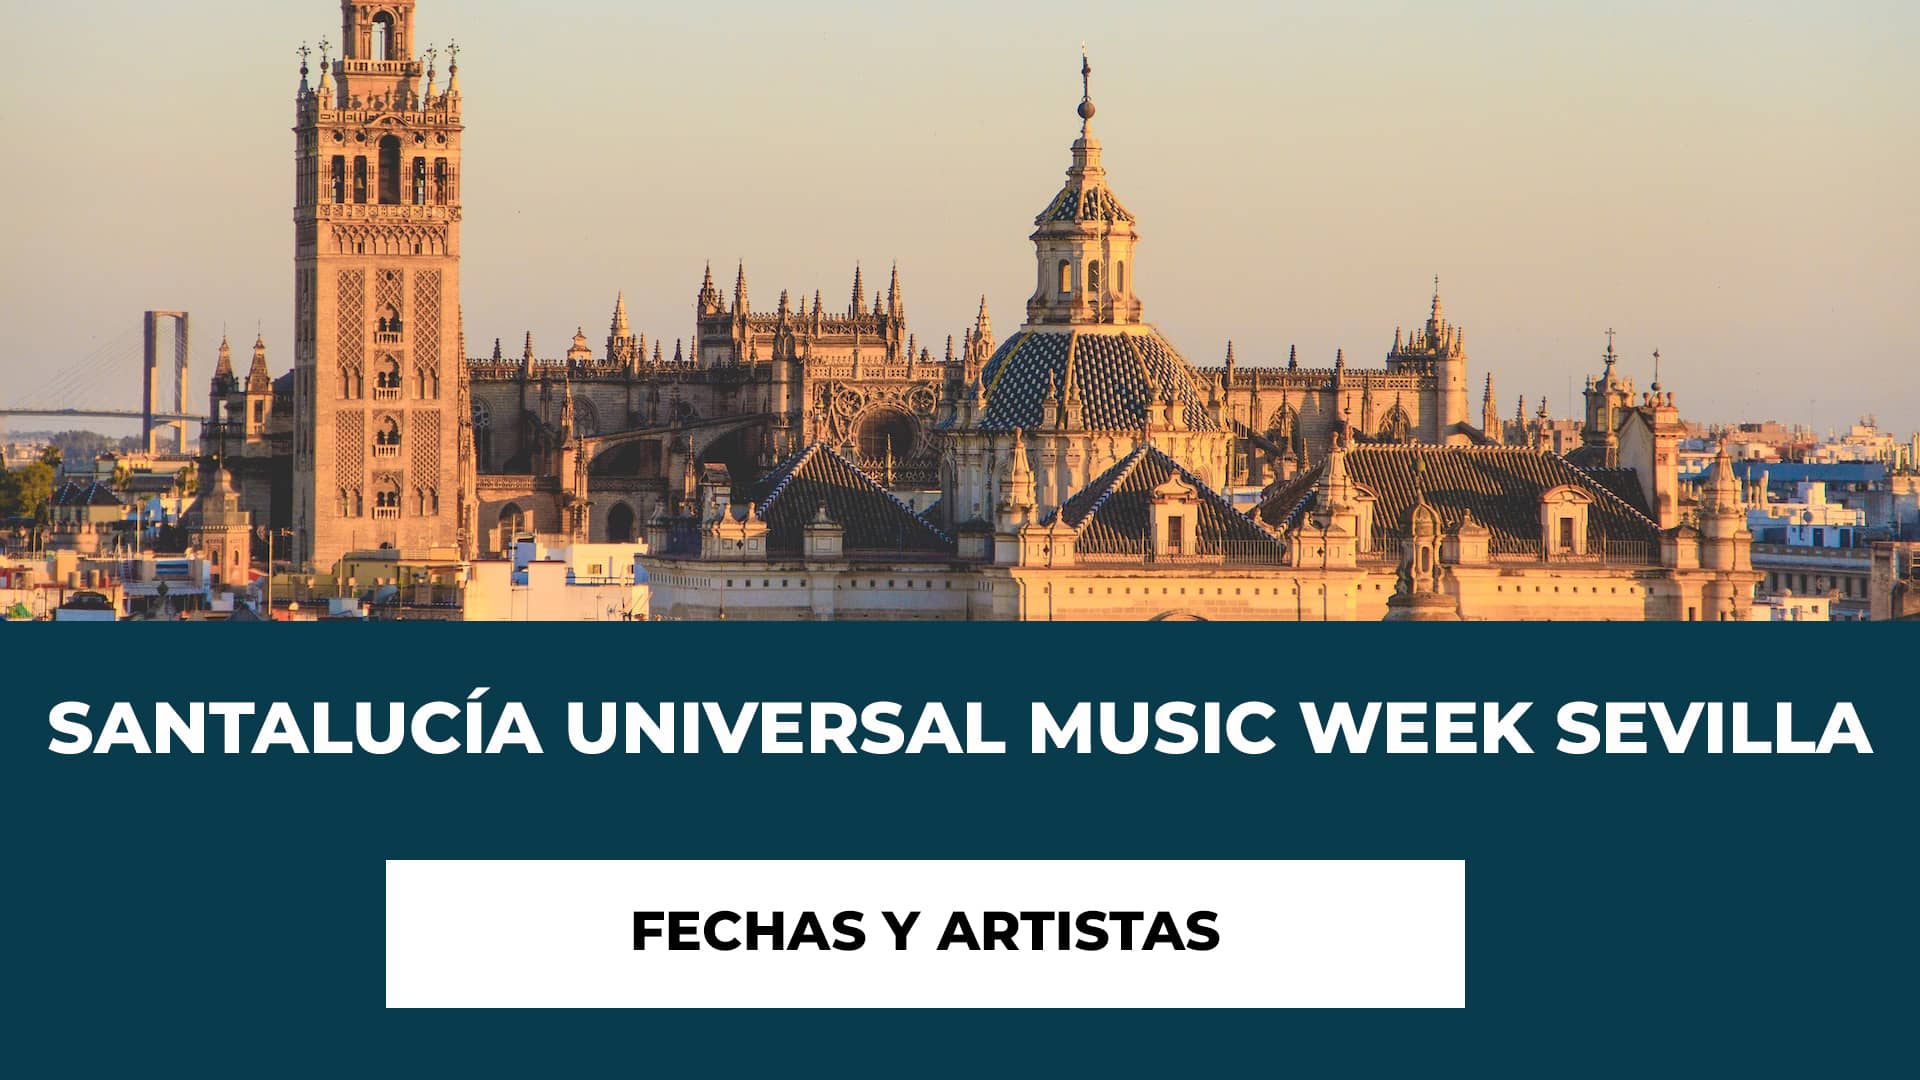 Fechas y Artistas Santalucía Universal Music Week Sevilla - Te motramos las diferentes fechas, recintos y entradas de los conciertos